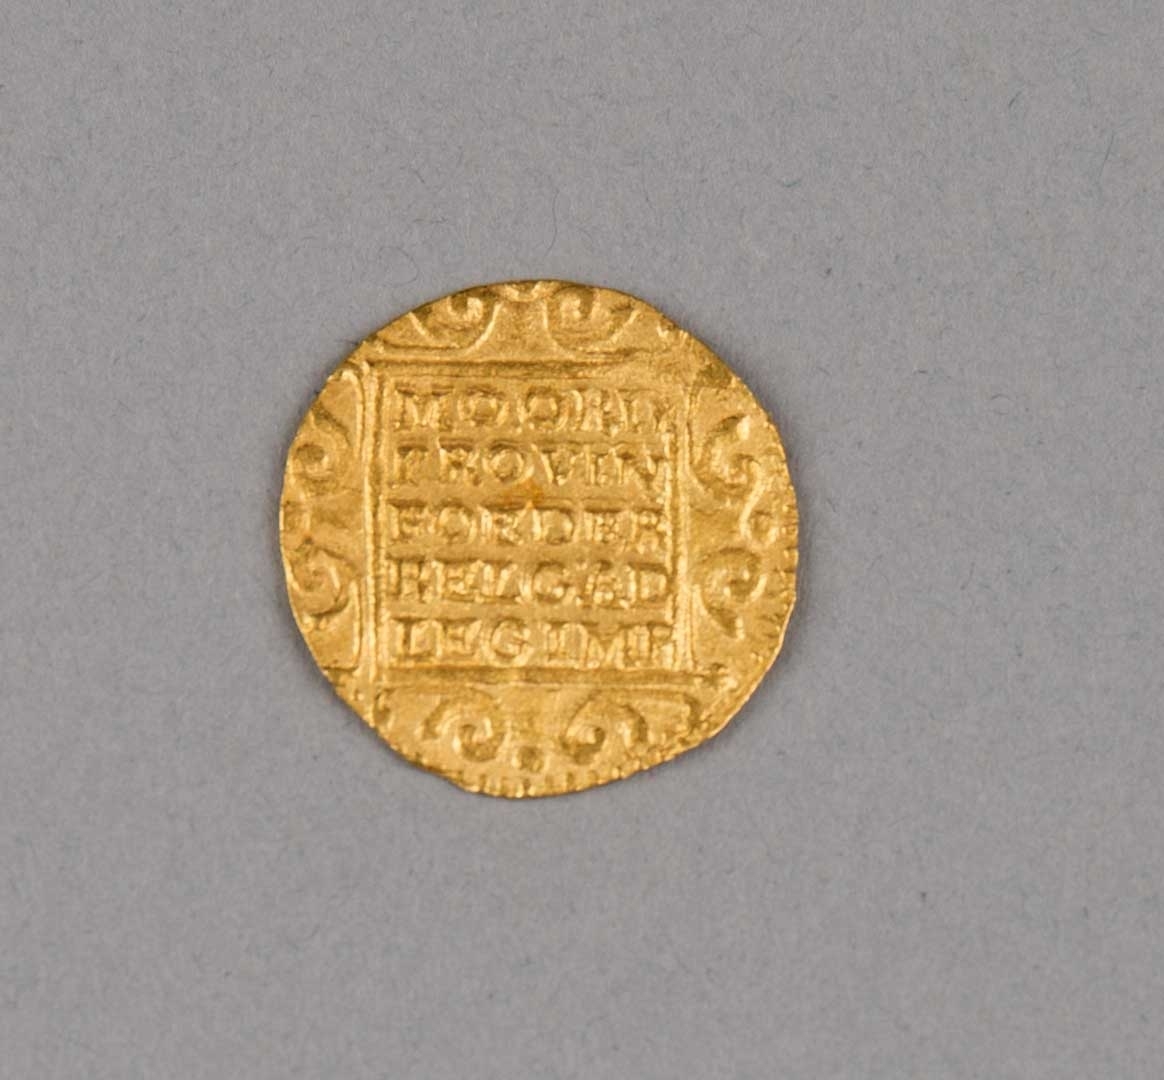 Rundefunnet, stort antall gull- og sølvmynter fra nederlandske ostindiafareren AKERENDAM som forliste på jomfruturen 8. mars 1725 utenfor Ålesund på Sunnmøre.

1 stk.  Gull dukat Utrecht fra 1724
